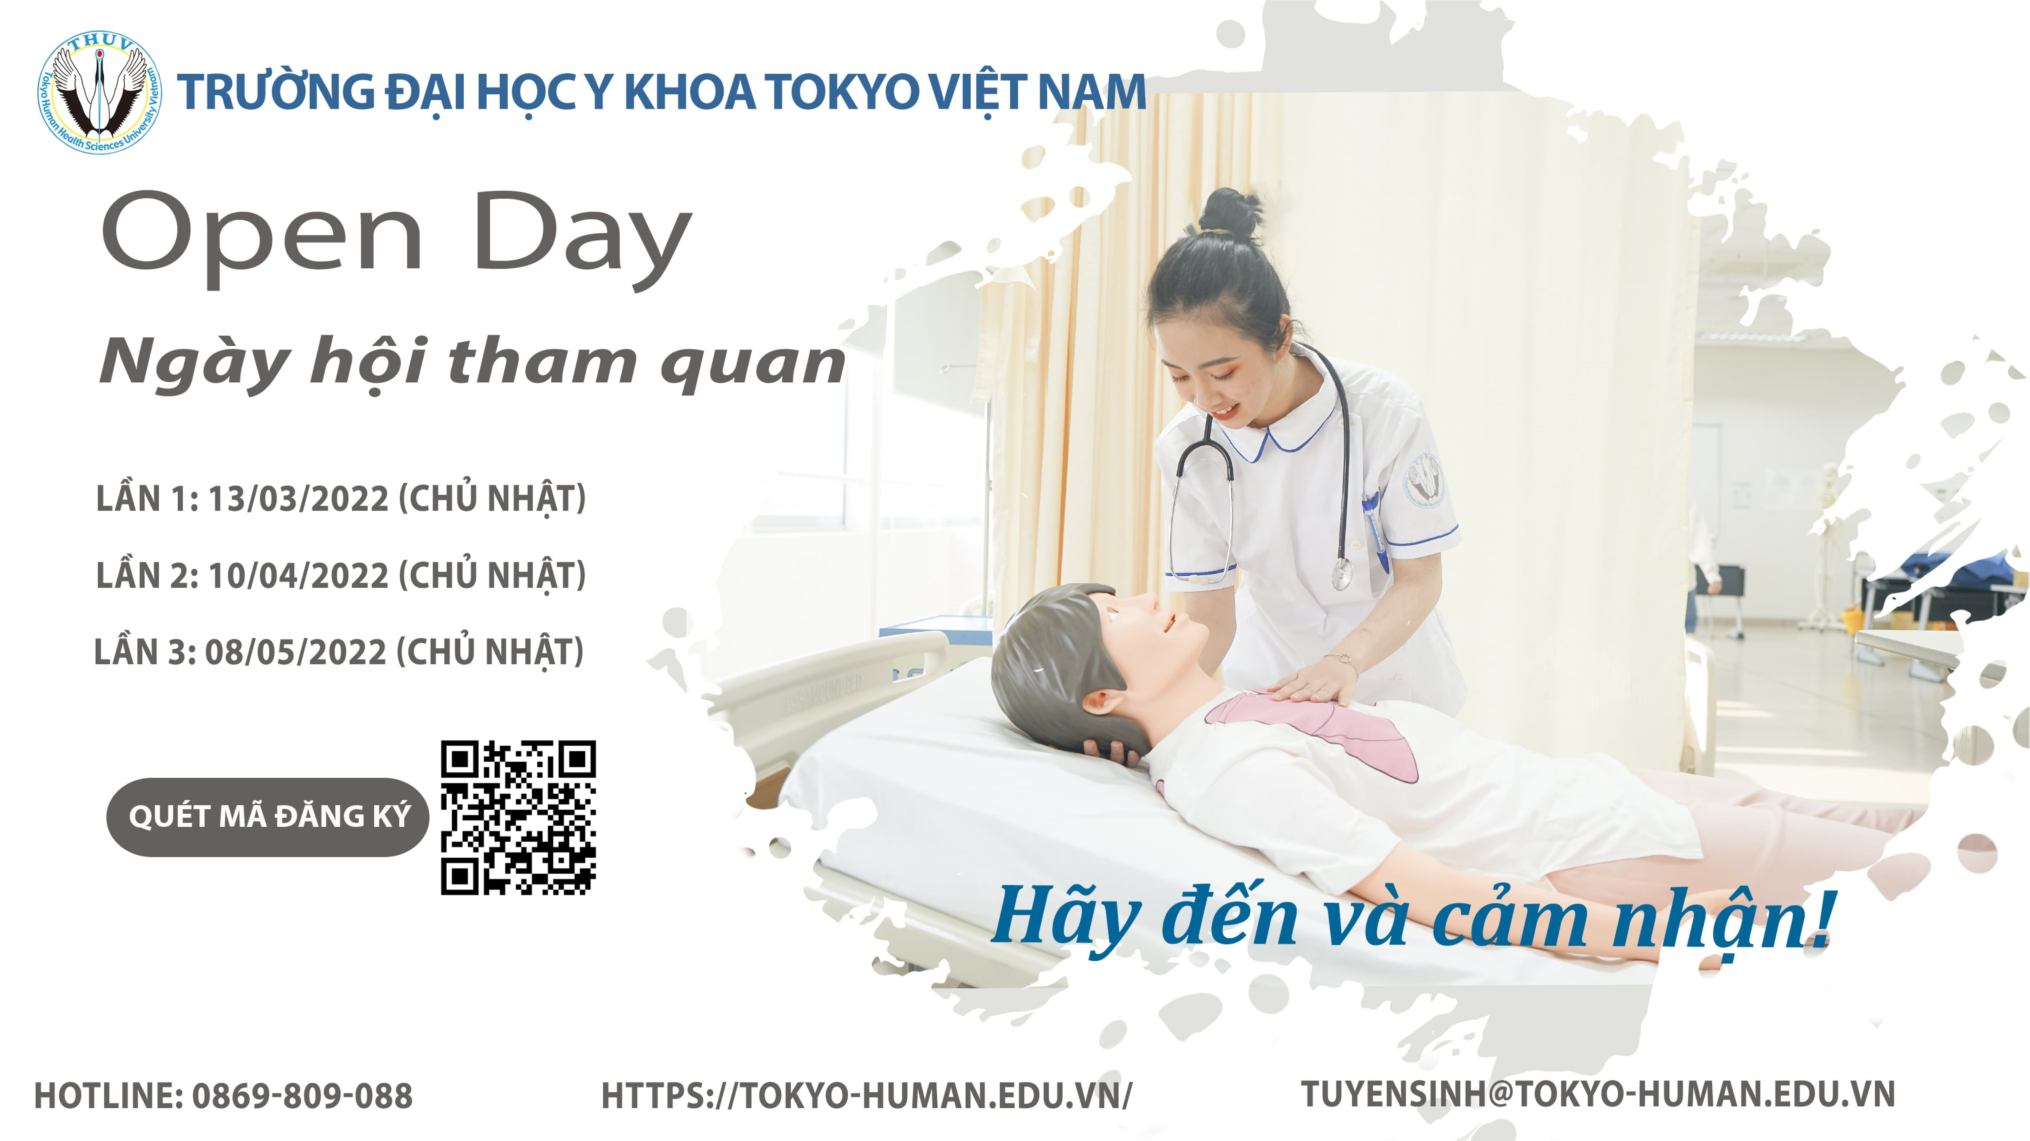 Trường Đại học Y khoa Tokyo Việt Nam - THUV] - Video Trường ĐH Y khoa Tokyo Việt Nam 